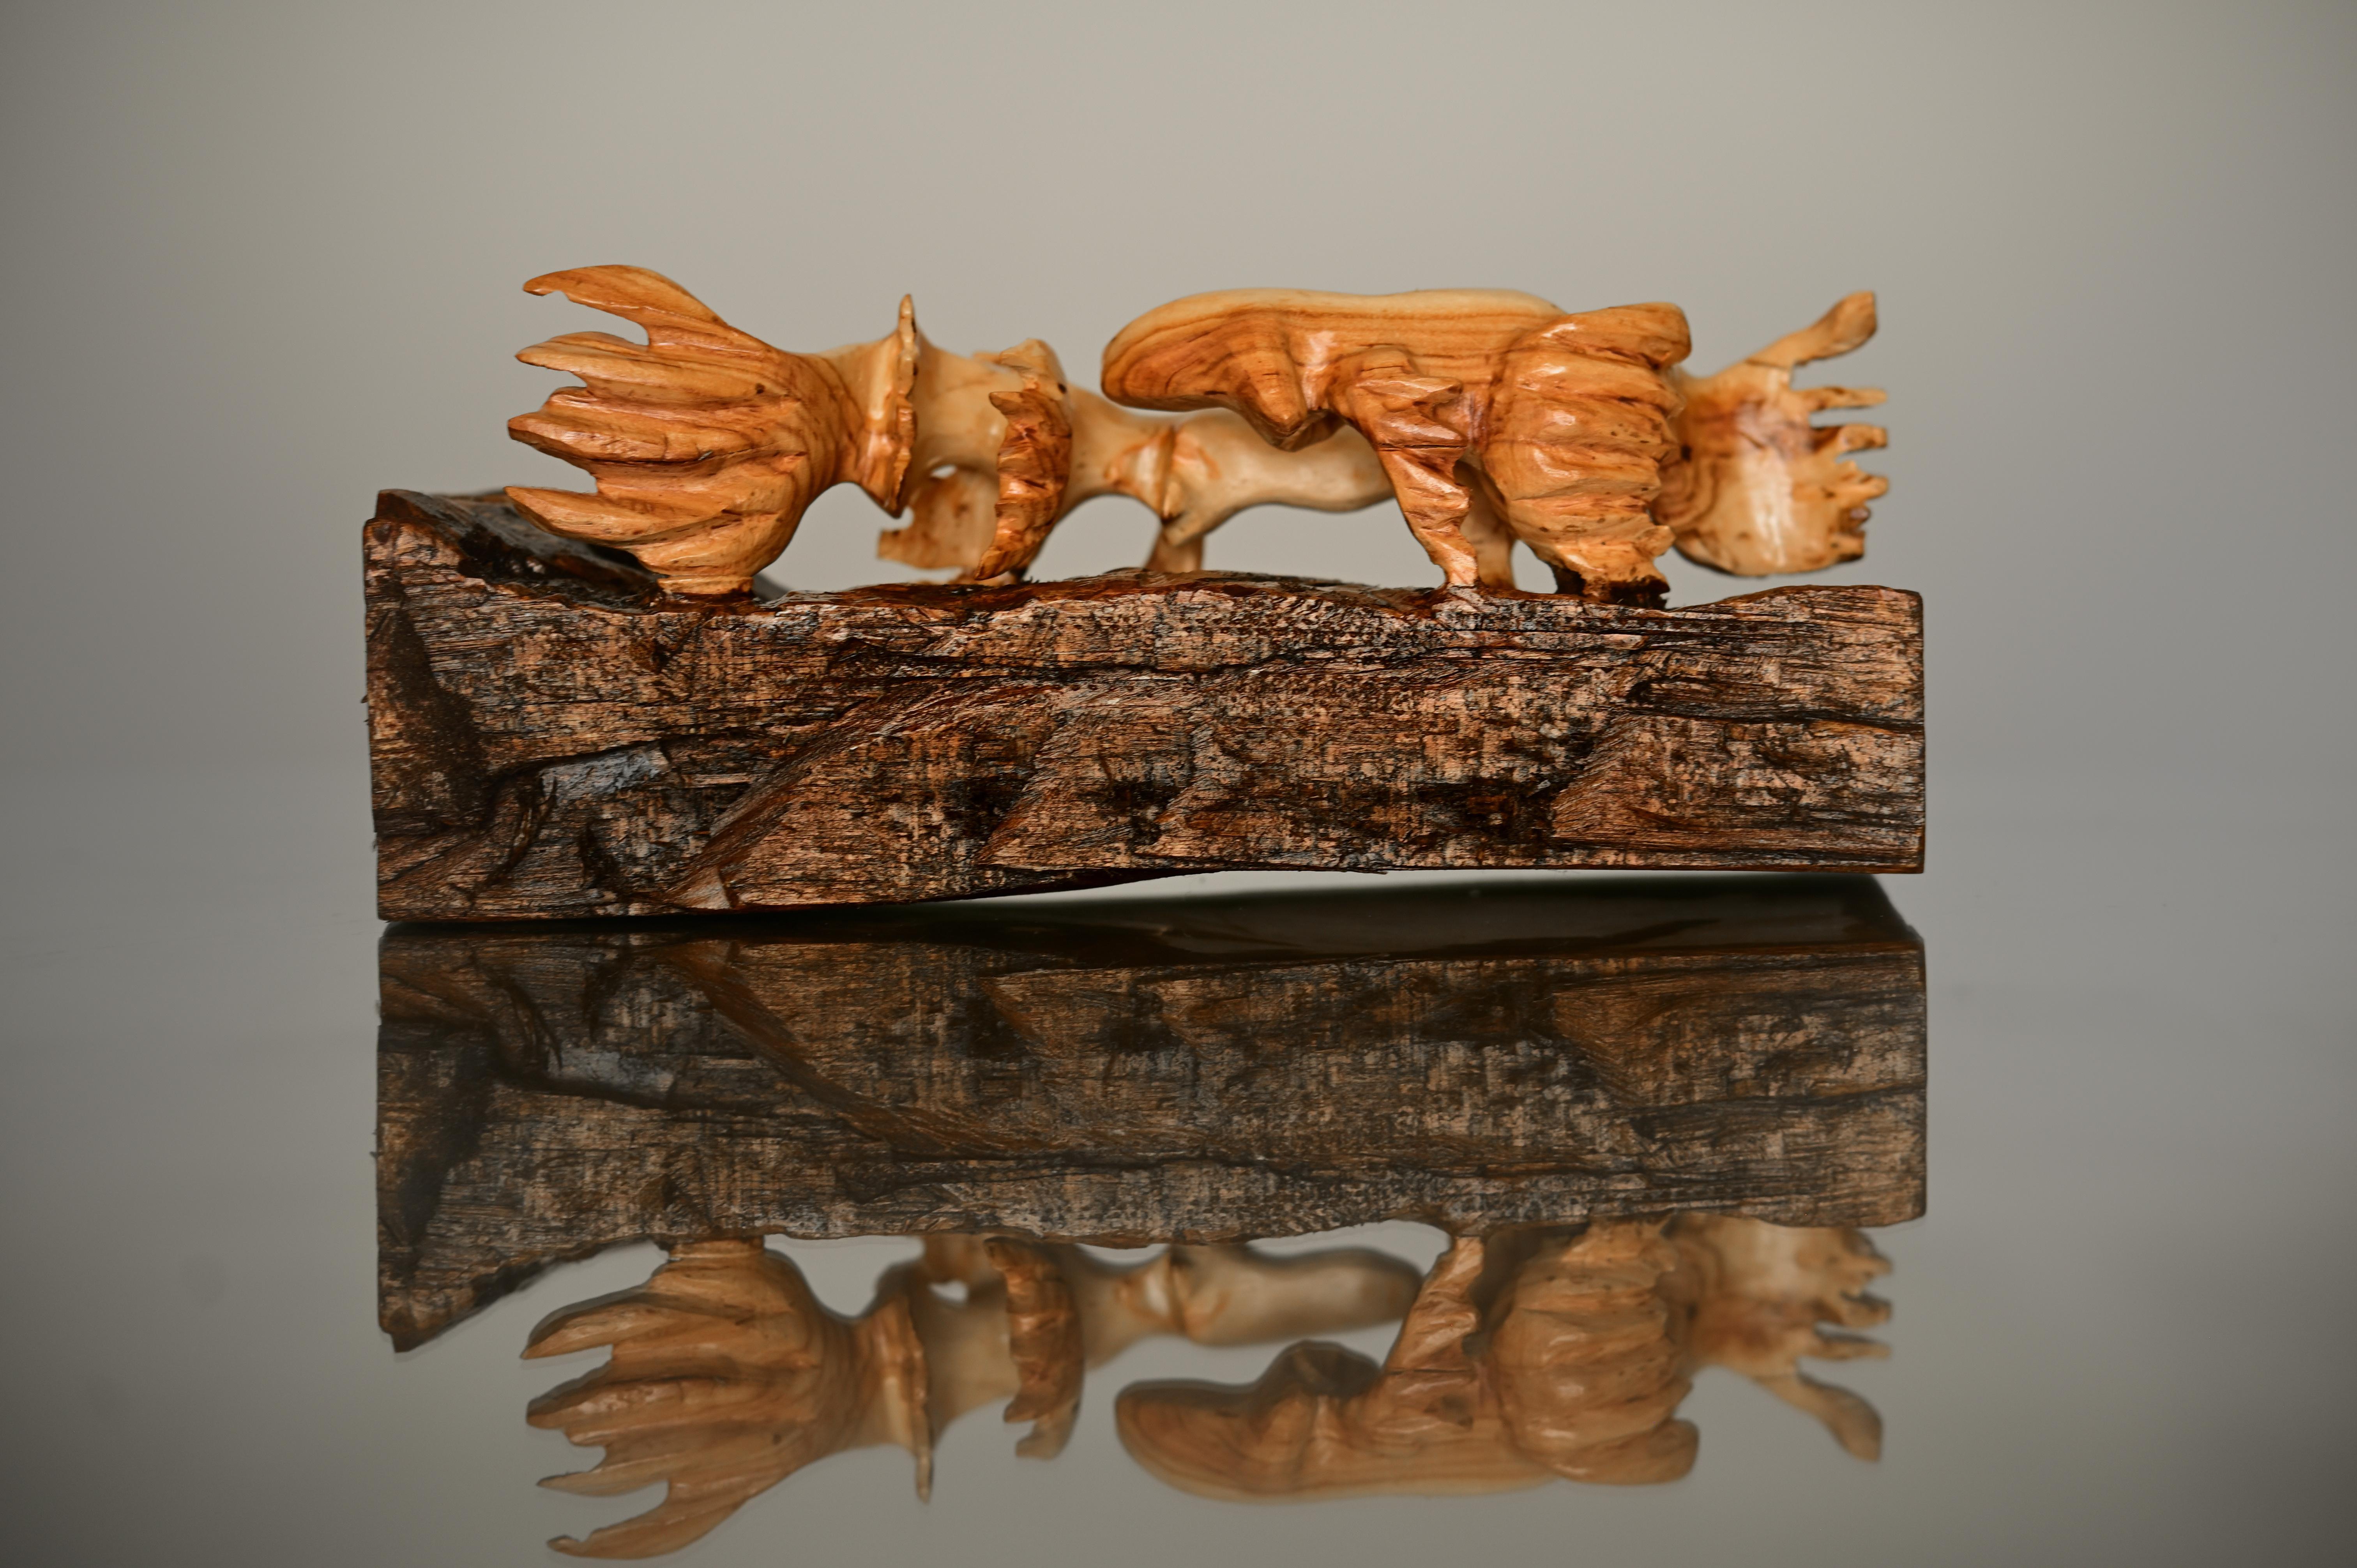 Figurative Sculpture Mike Jorgensen - beta fish synchronized, Sculpture en bois naturaliste originale